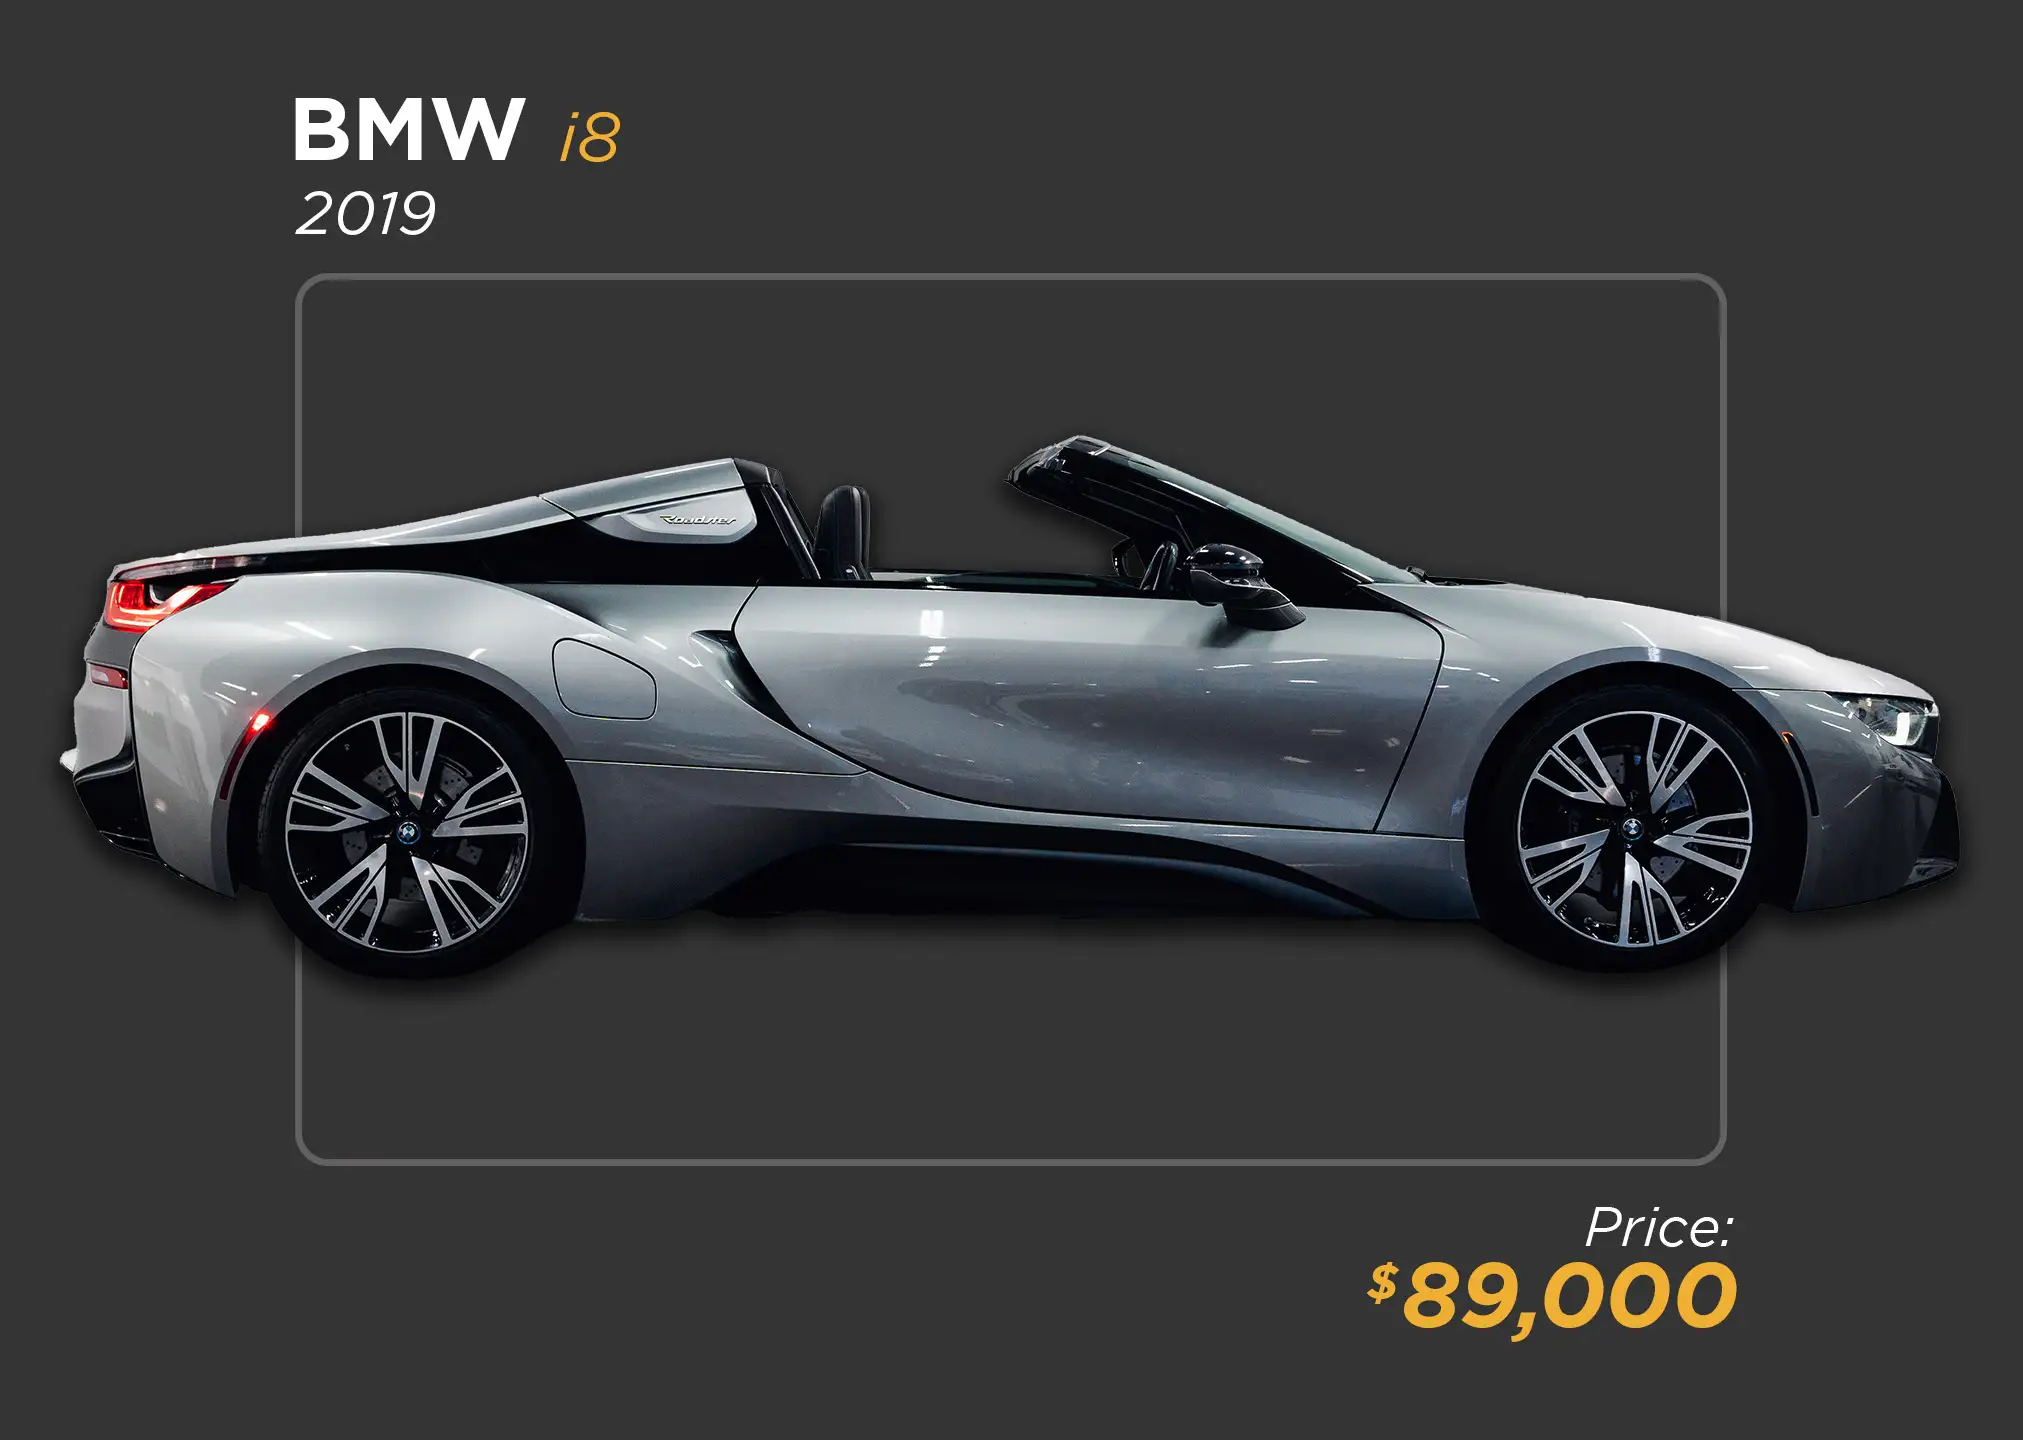 2019 GREY METALLIC BMW I8 FOR SALE 89K